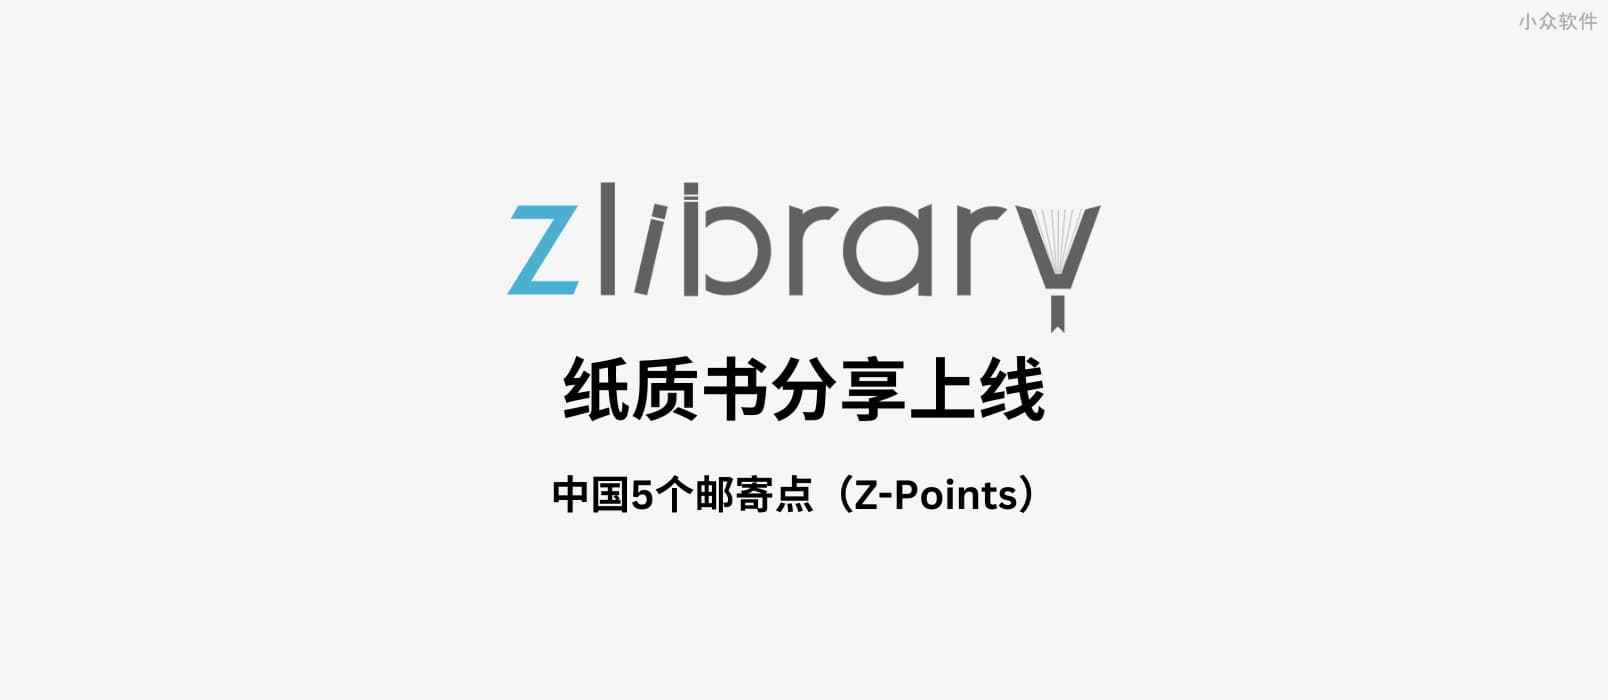 Z-Library 又搞事情：Z-Points – 提供纸质书籍分享，中国5个点